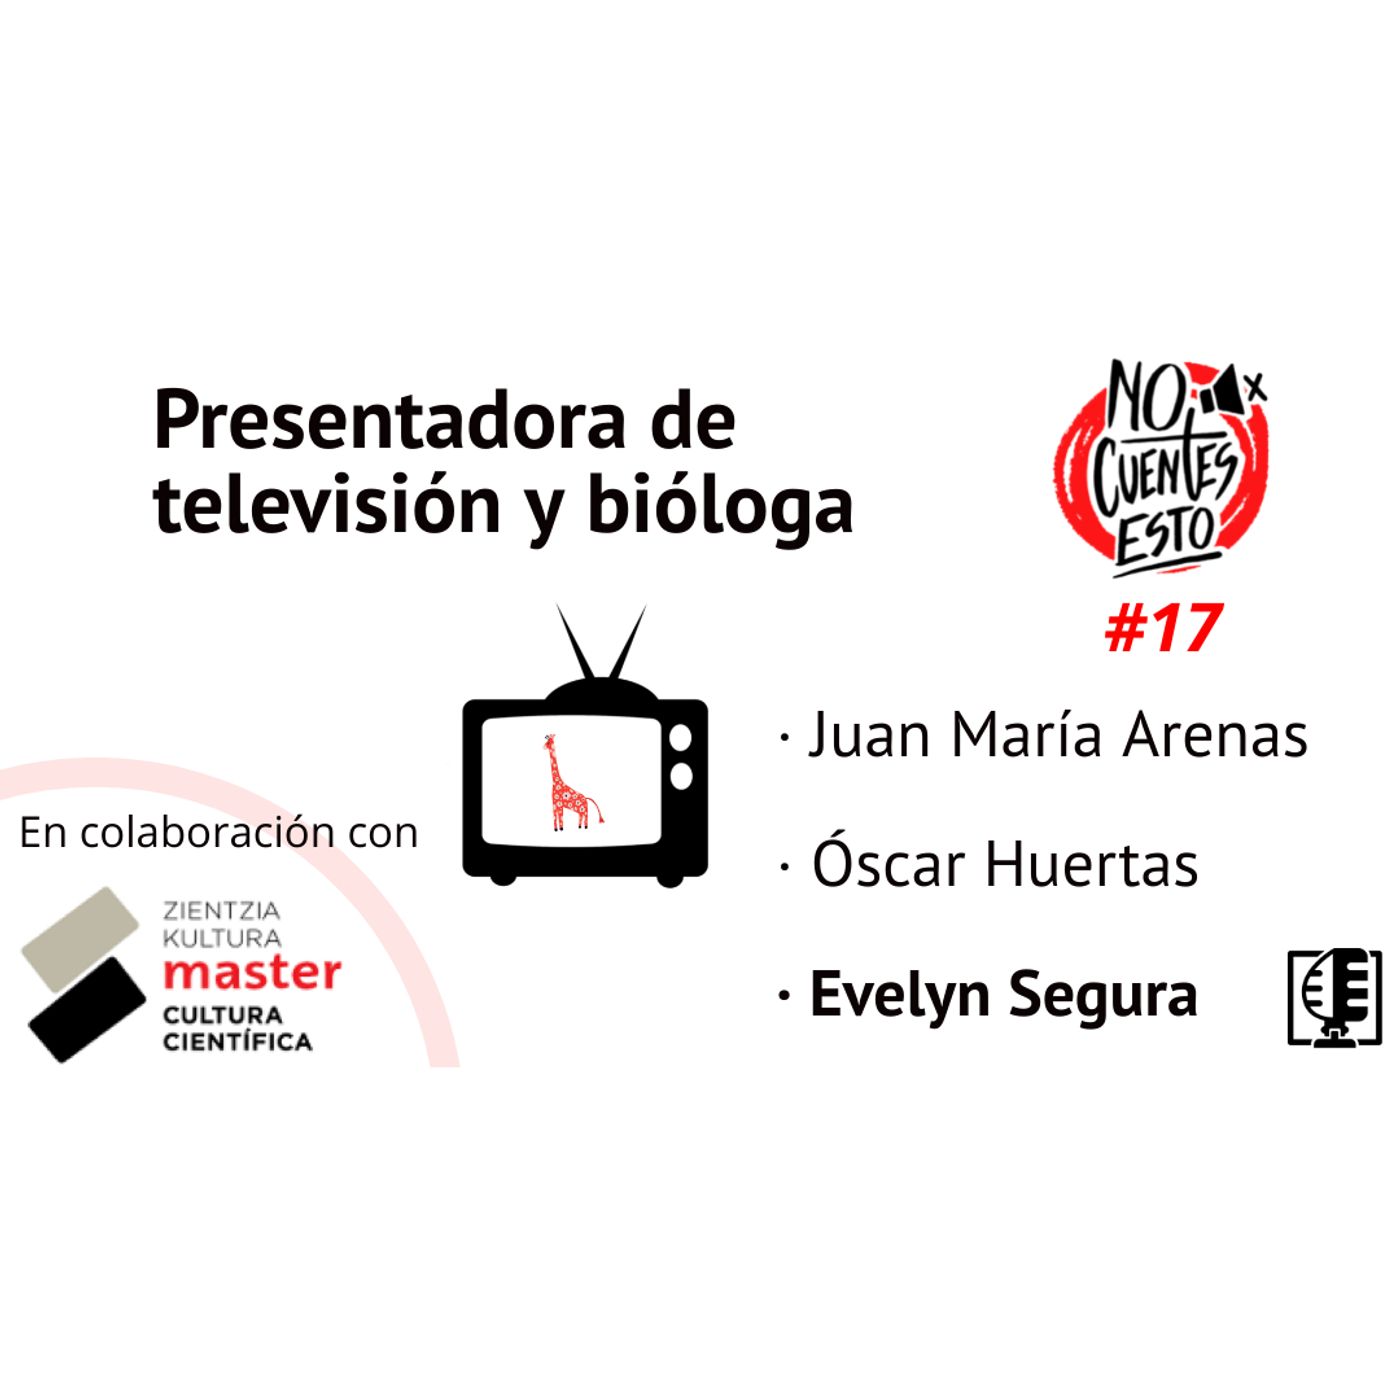 Evelyn Segura: Bióloga y presentadora de ¡Que Animal! en RTVE #17